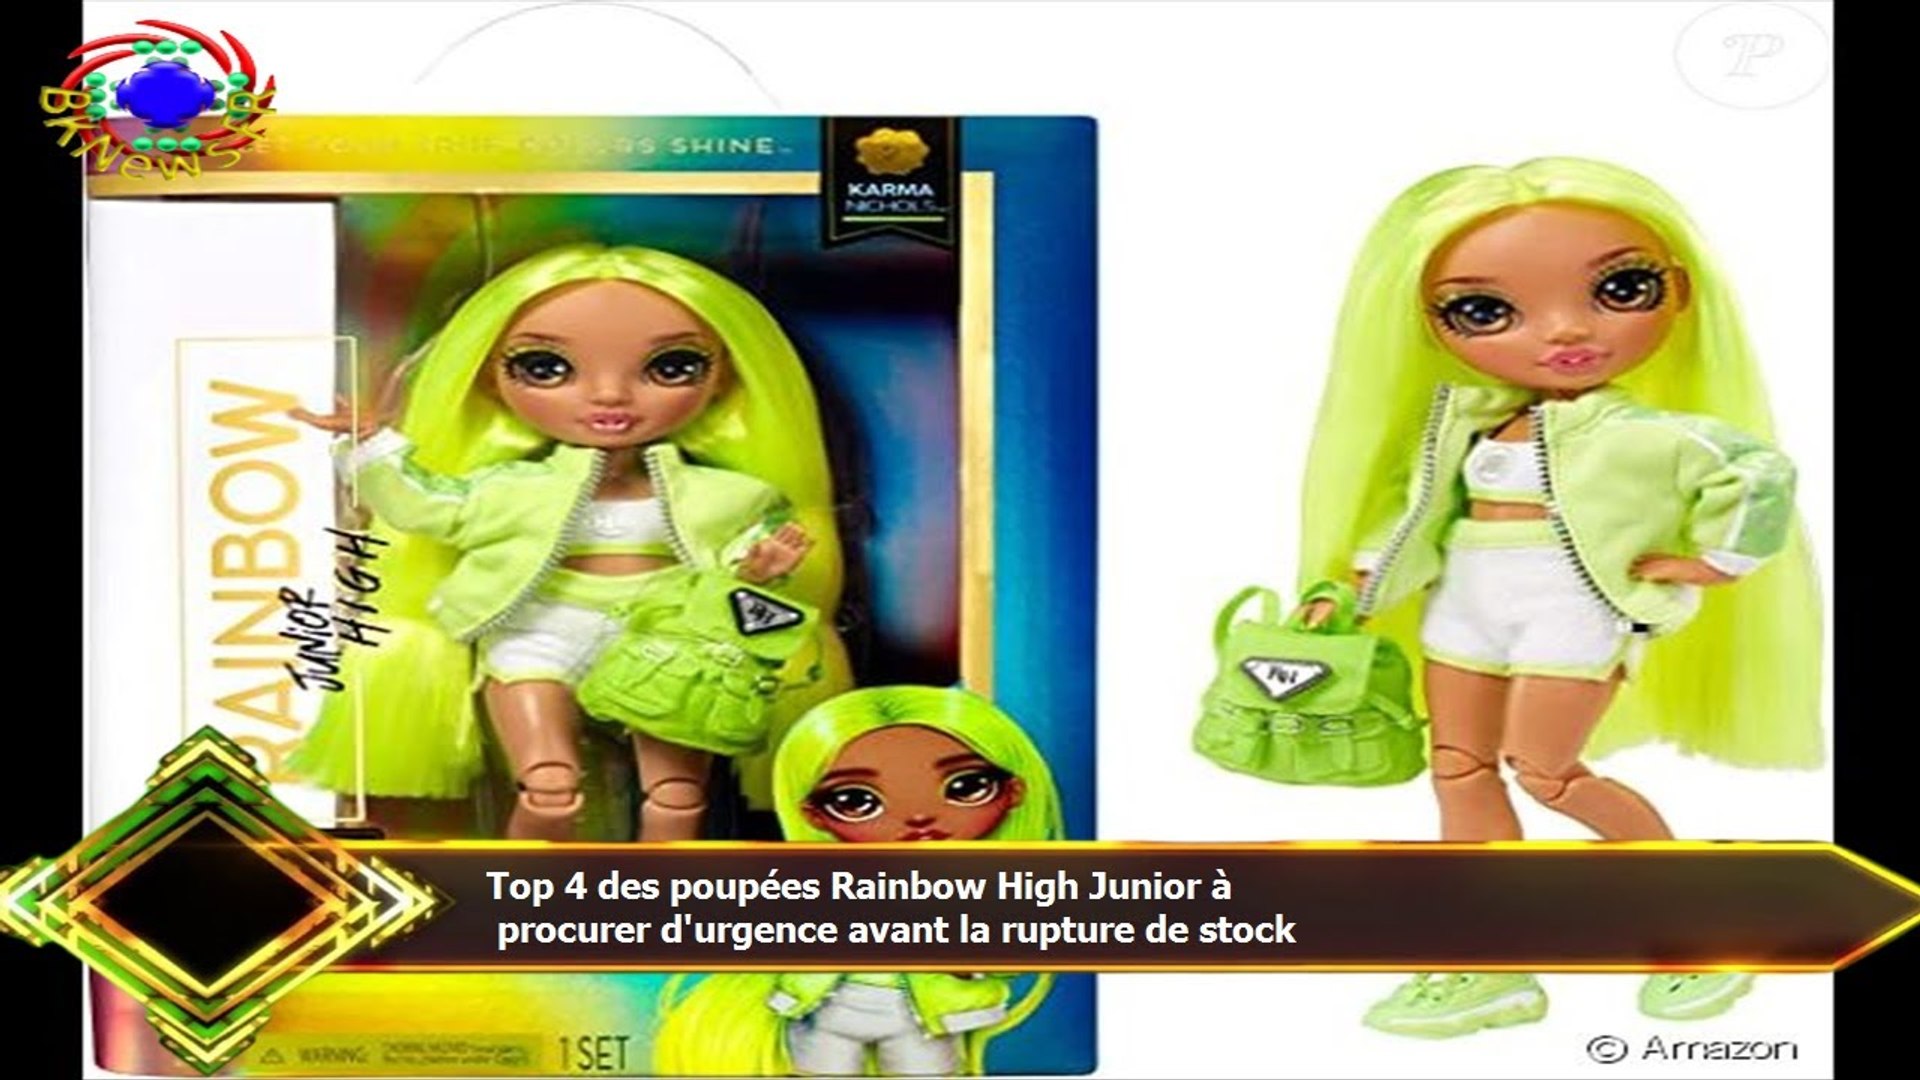 Top 4 des poupées Rainbow High Junior à procurer d'urgence avant